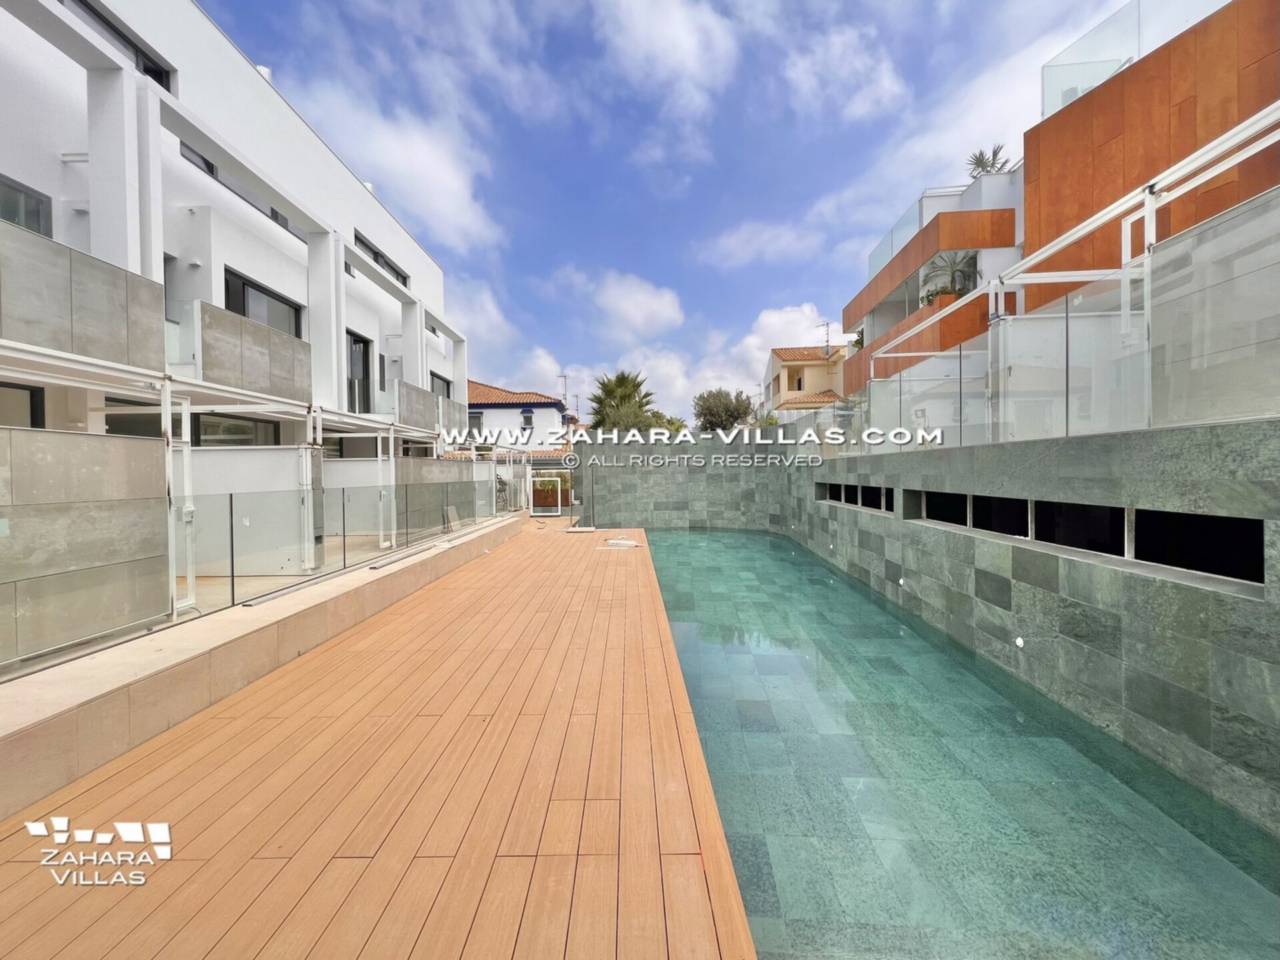 Imagen 3 de Promoción obra nueva terminada "EL OASIS DE ZAHARA" viviendas adosadas junto al mar